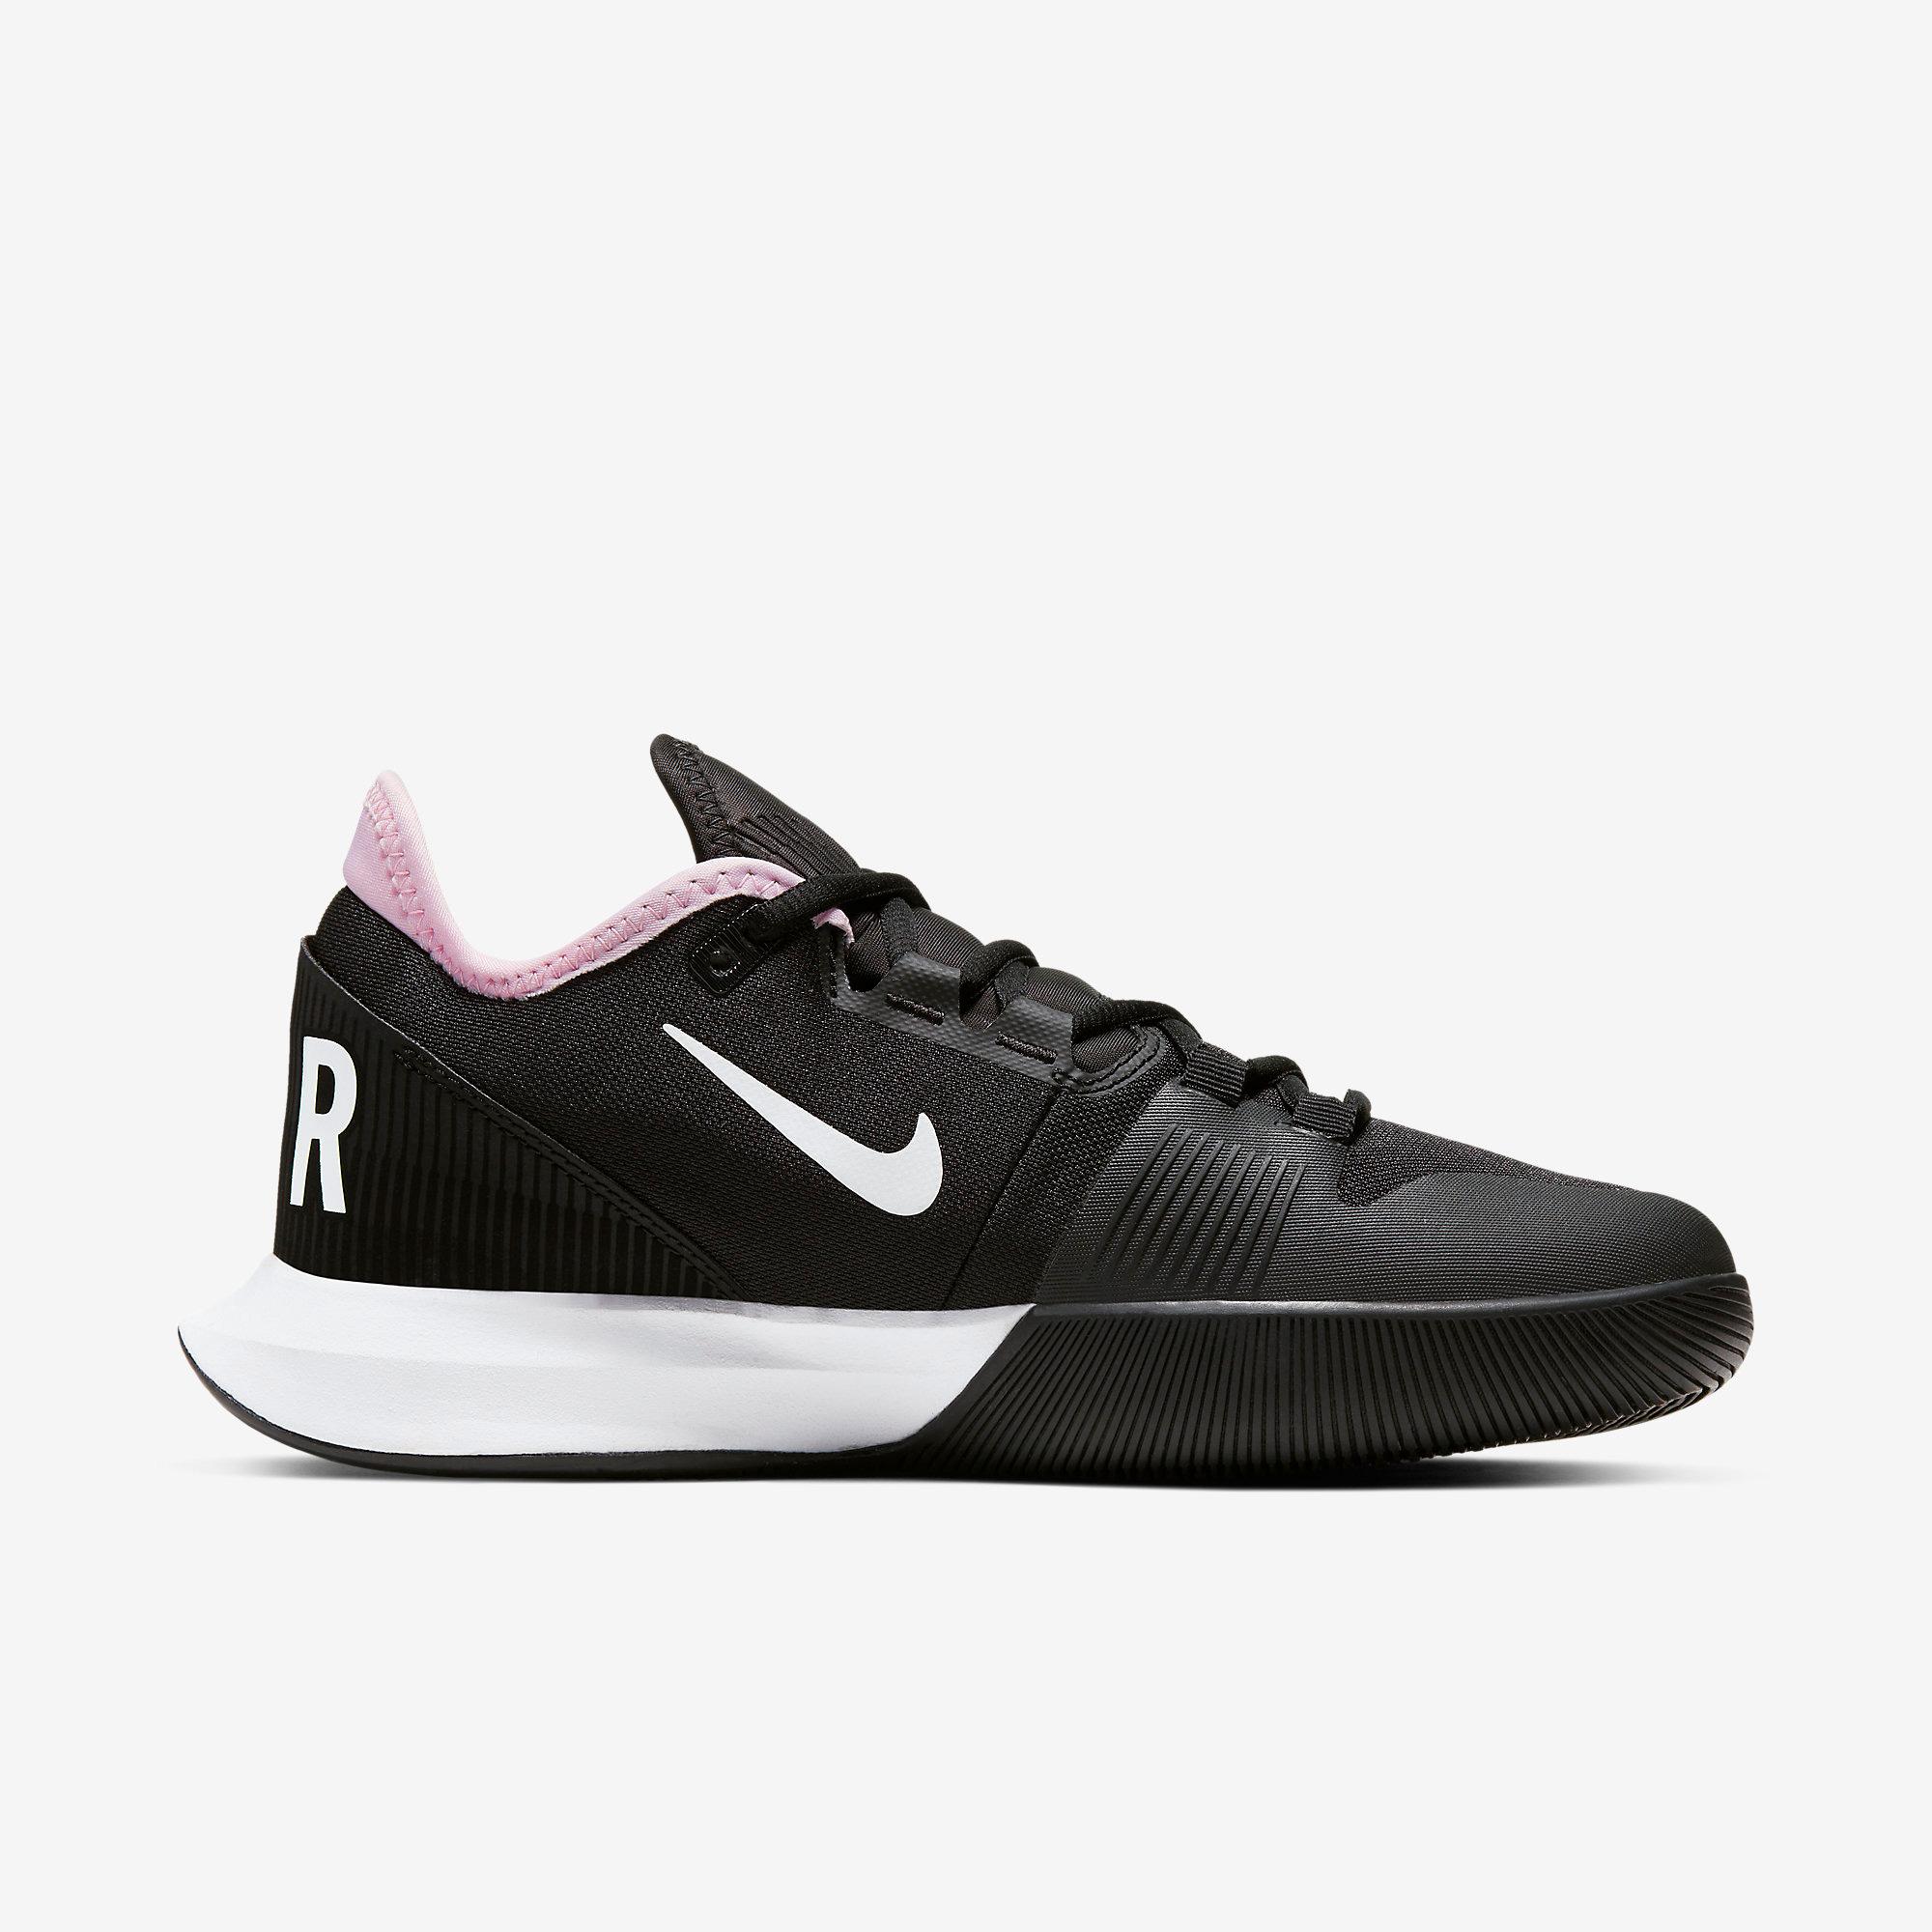 Nike Womens Air Max Wildcard Tennis Shoes - Black/White/Pink Foam ...